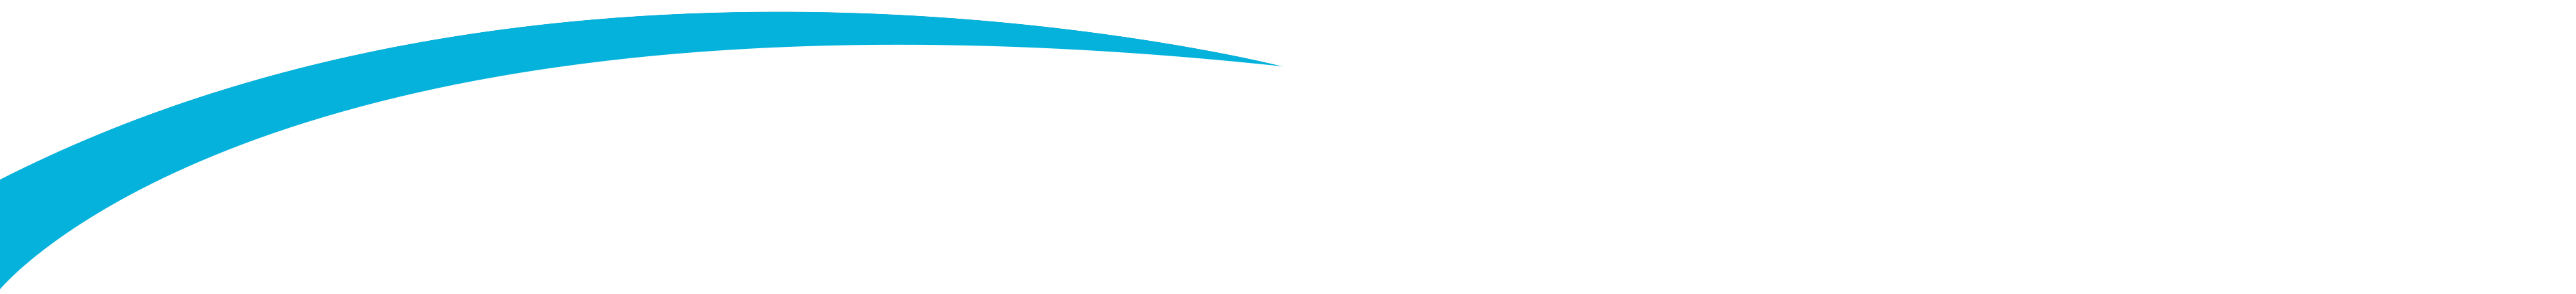 banner-shape